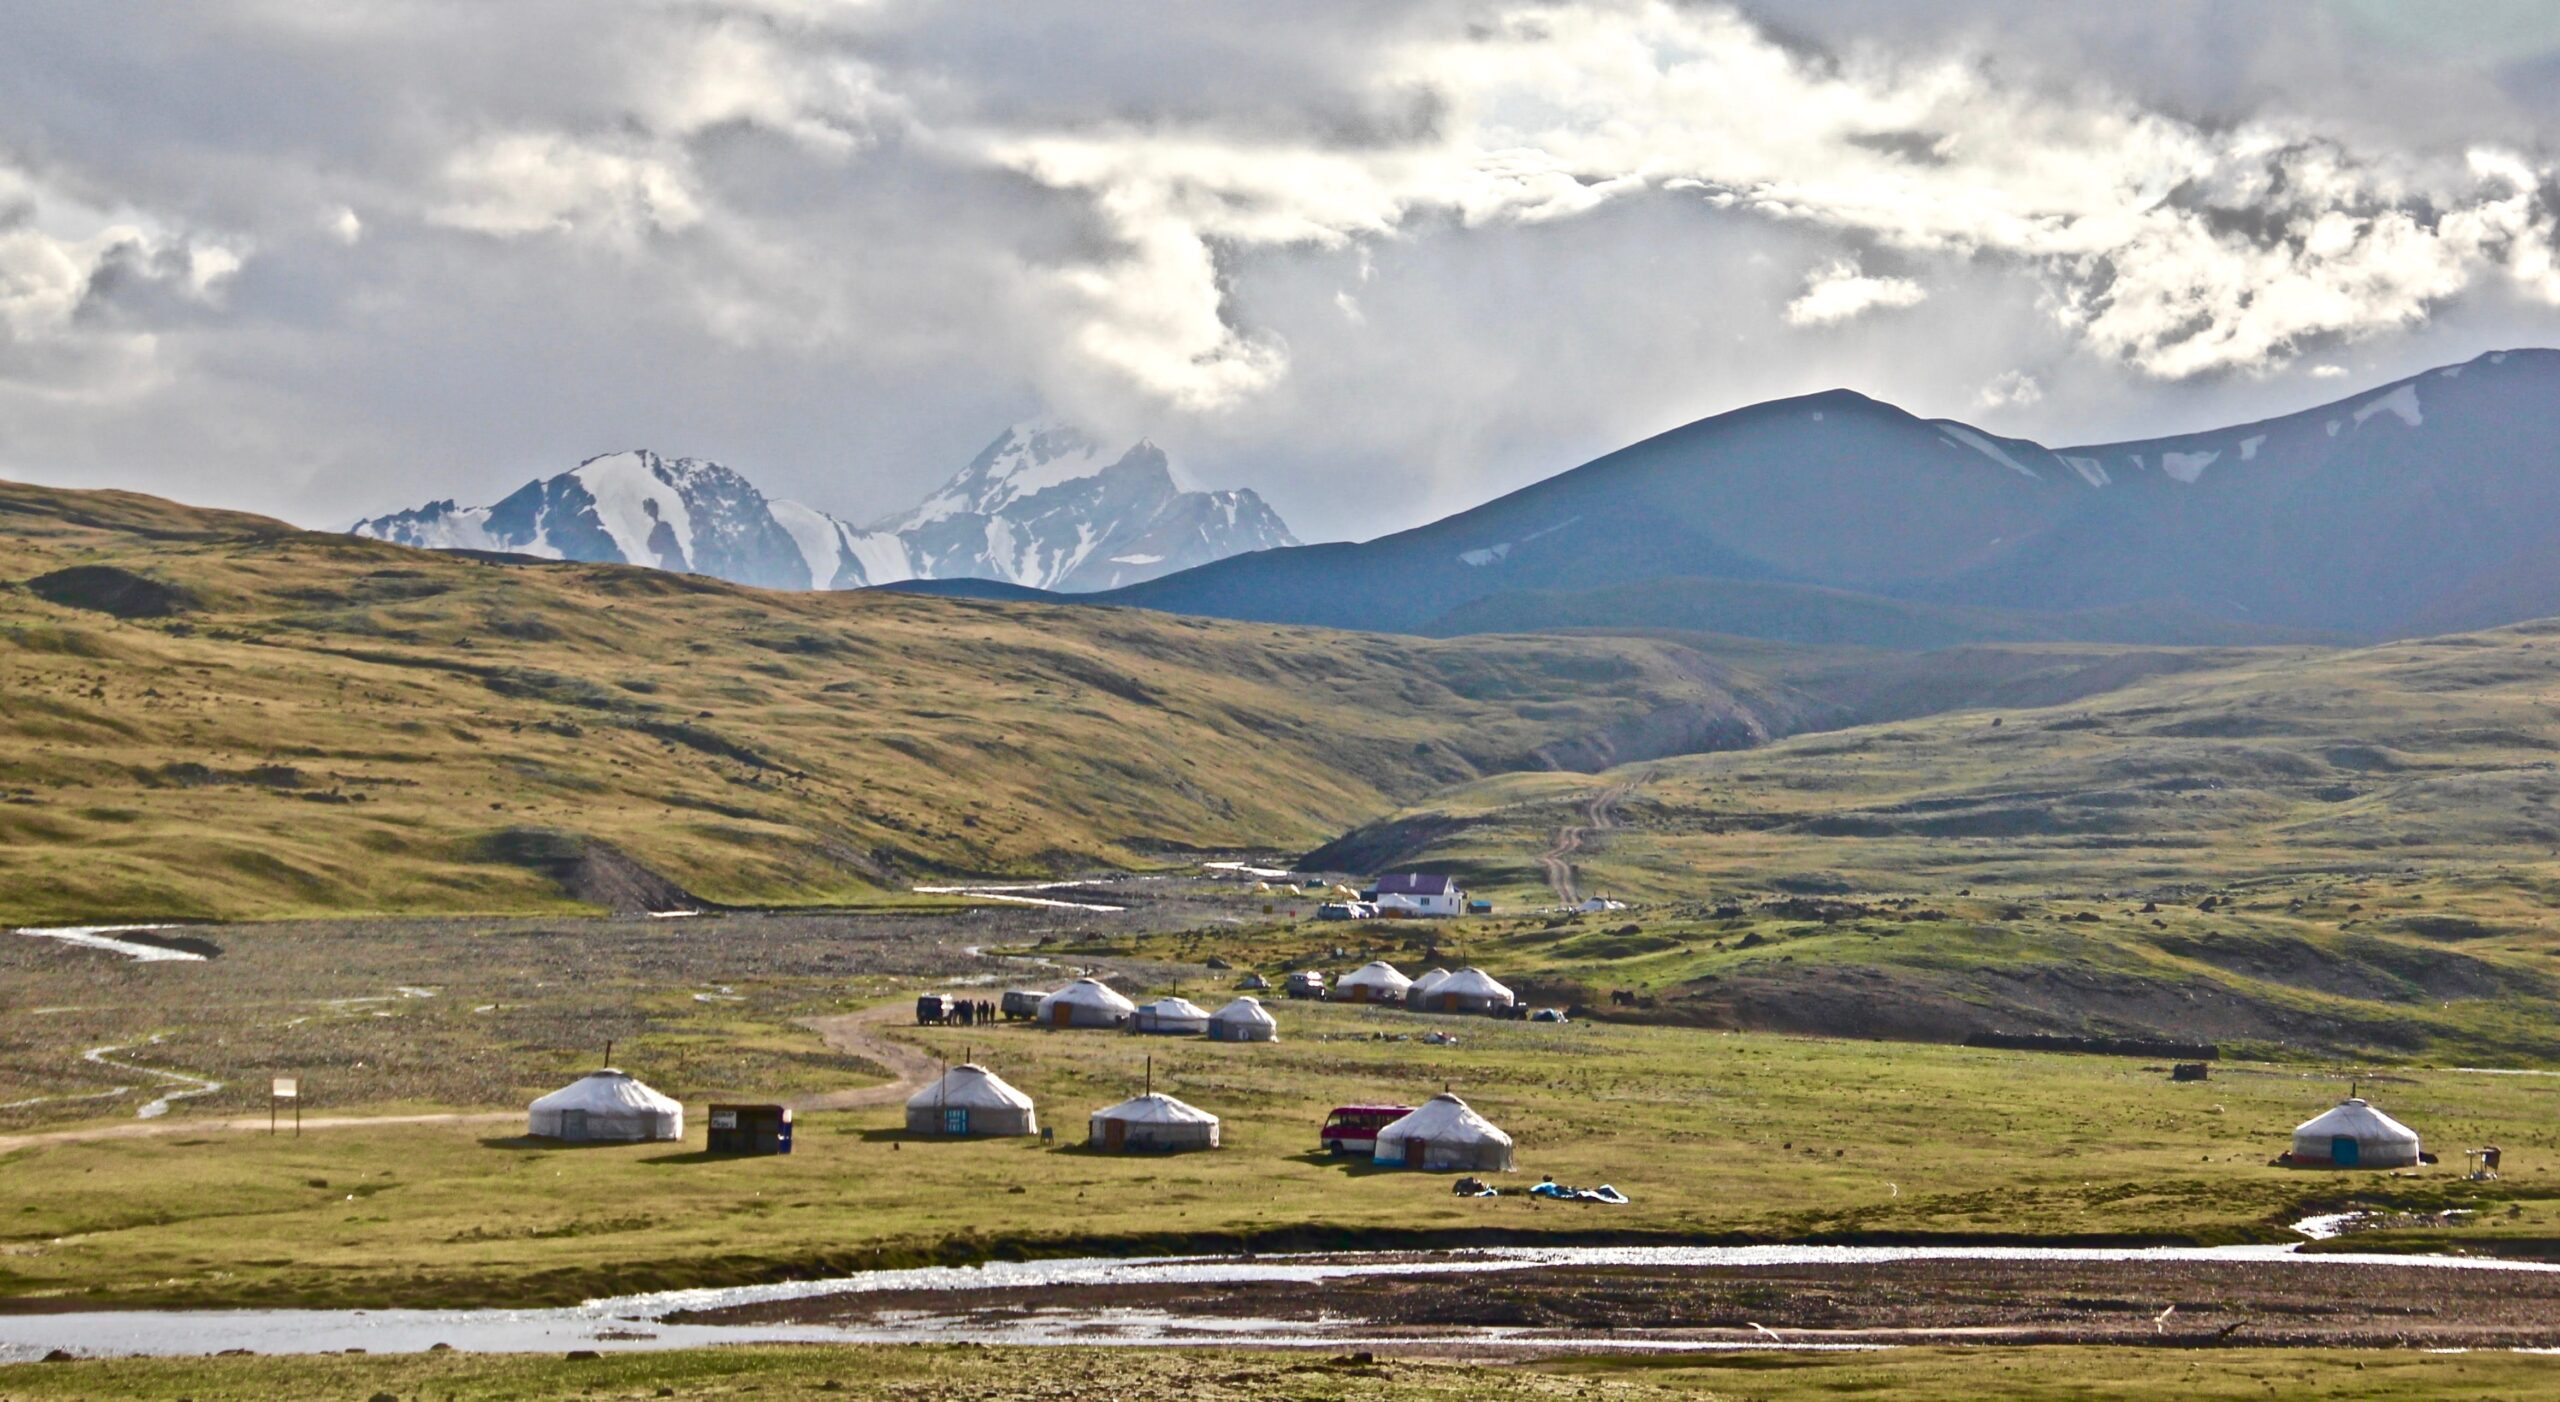 Altai mountains, Western Mongolia (1)